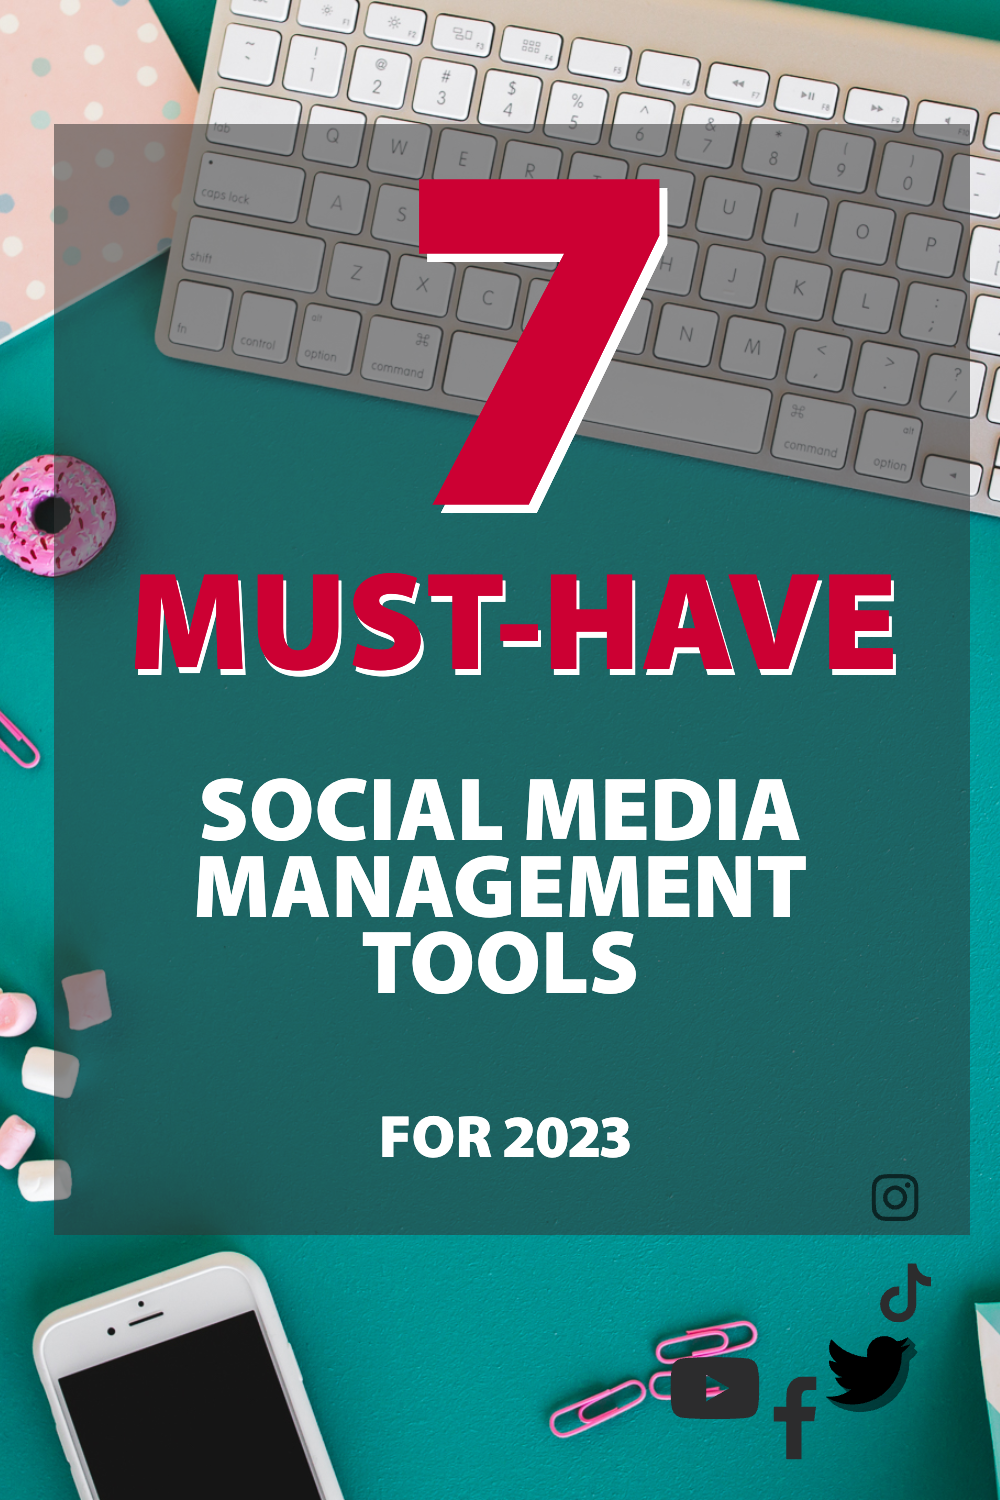 2023 年必备的 7 种社交媒体管理工具